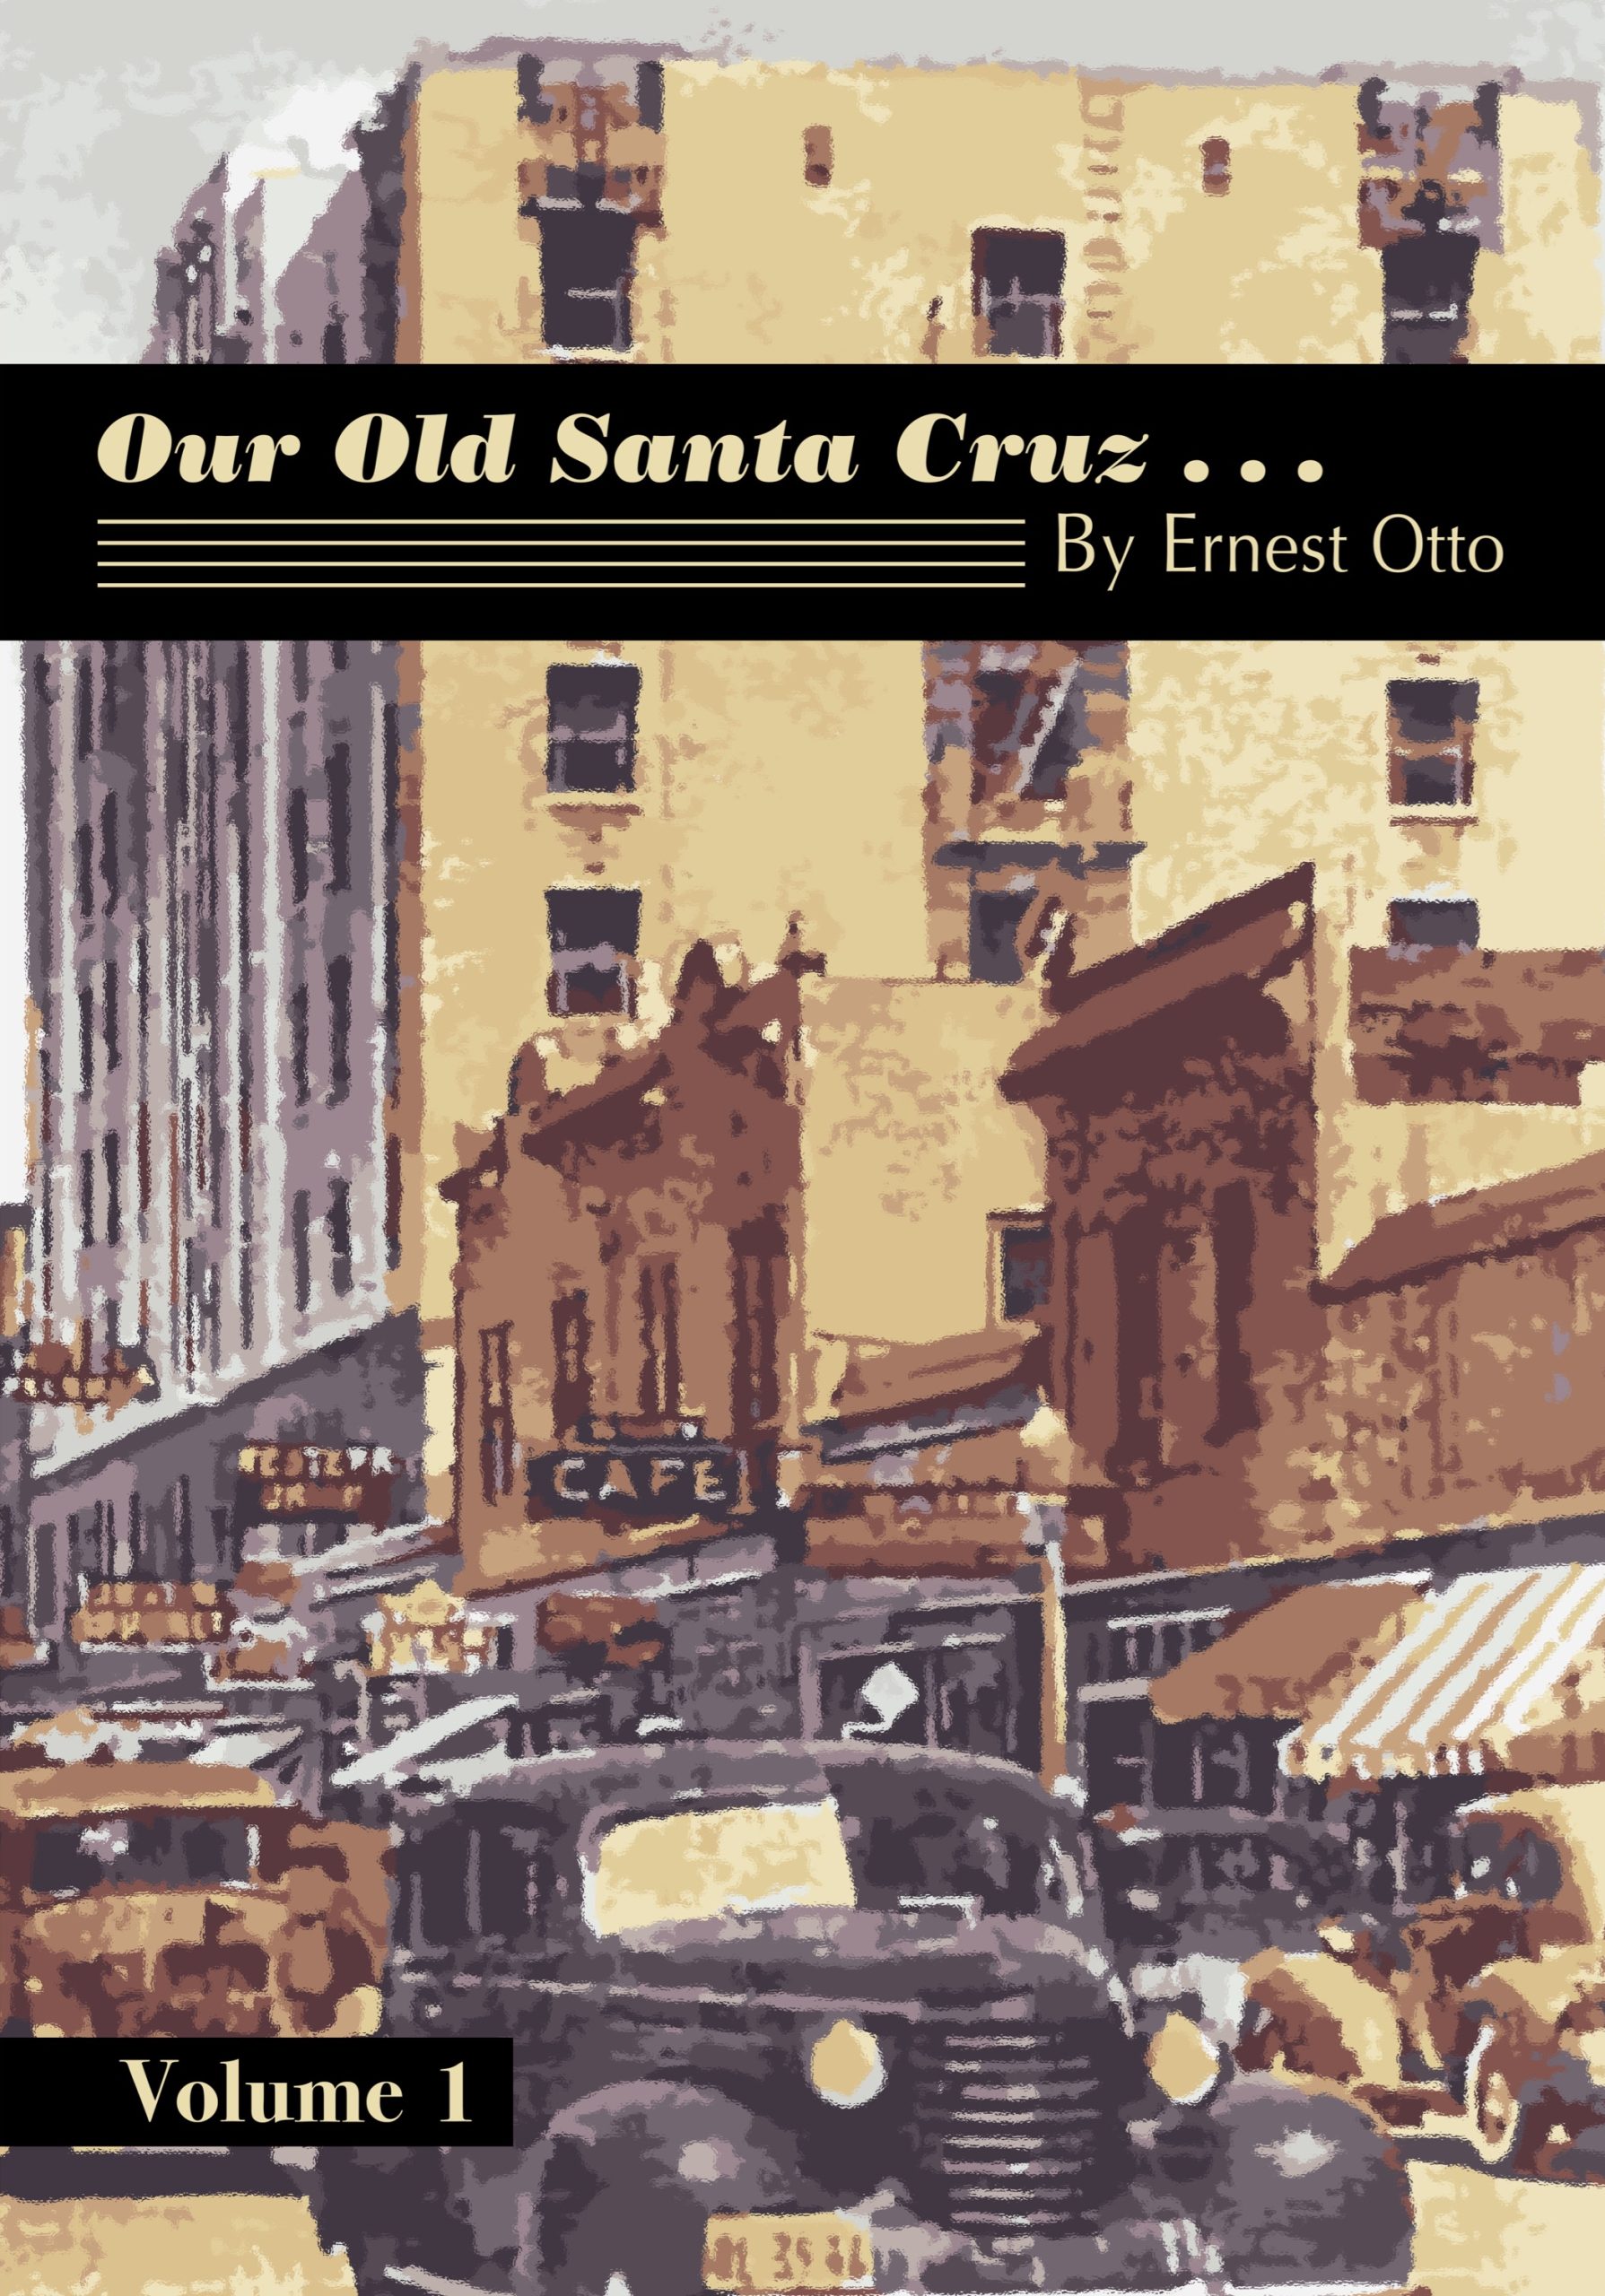 Our Old Santa Cruz... Volume 1 cover